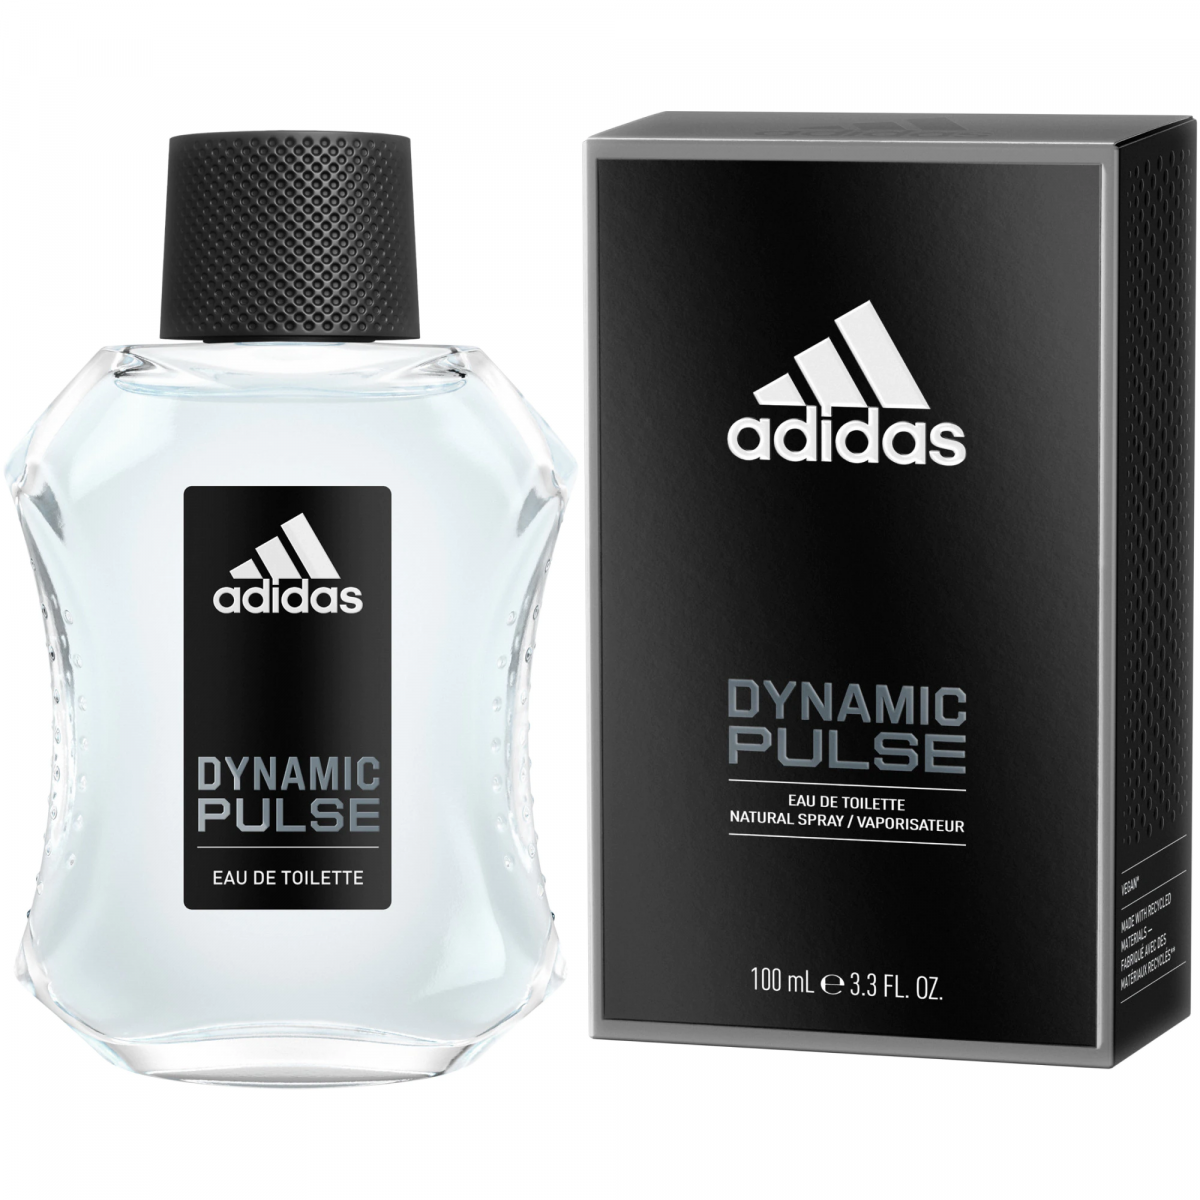 adidas - -DYNAMIC PULSE , Eau De Toilette Natural Spray Vaporisateur 100ml (Parallel Import Product)